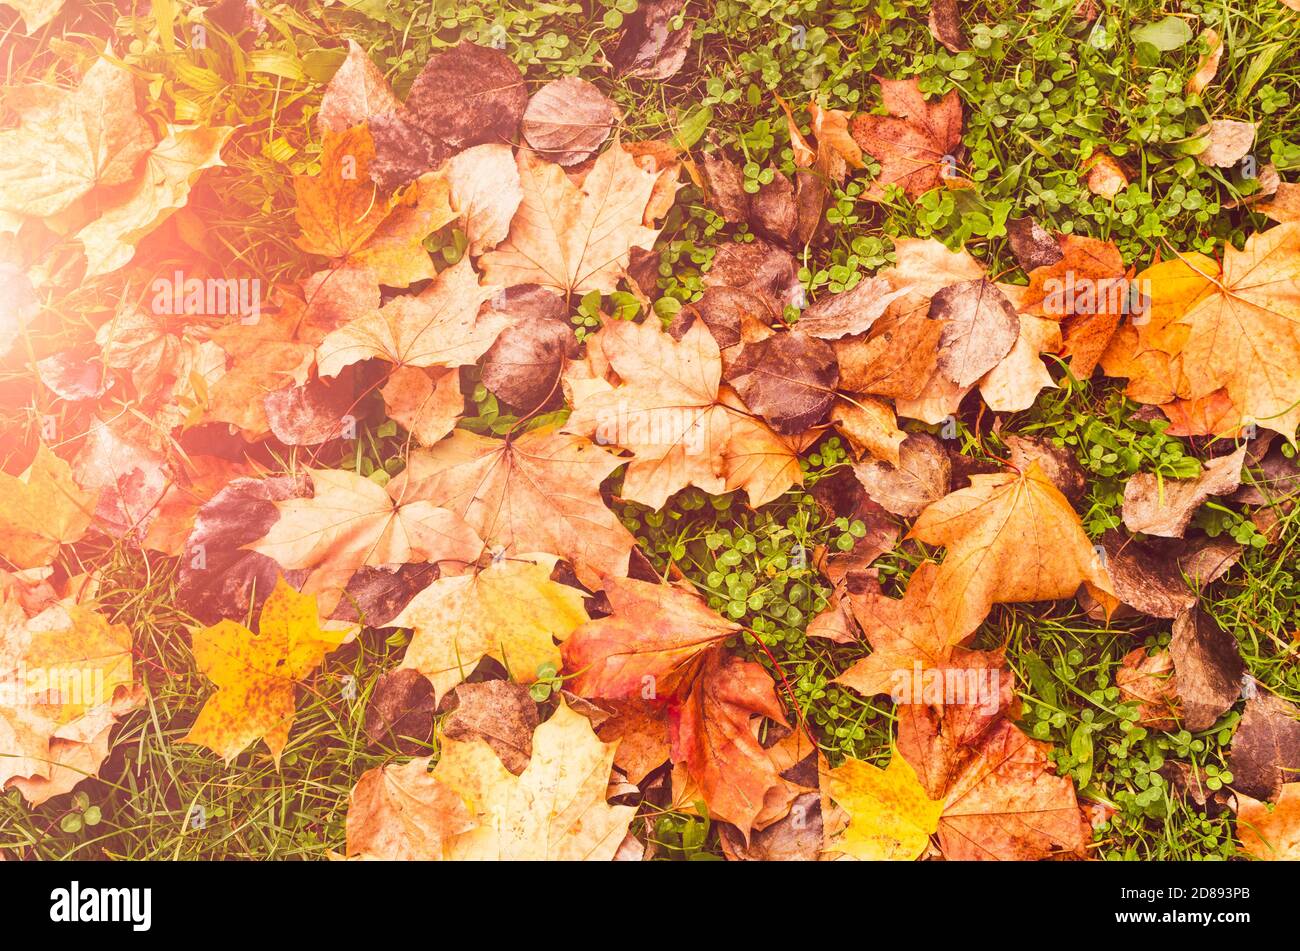 Herbstliche Landschaft: Bunte Blätter eines Ahornbaums liegen auf dem grünen Gras mit warmem Sonnenschein Stockfoto